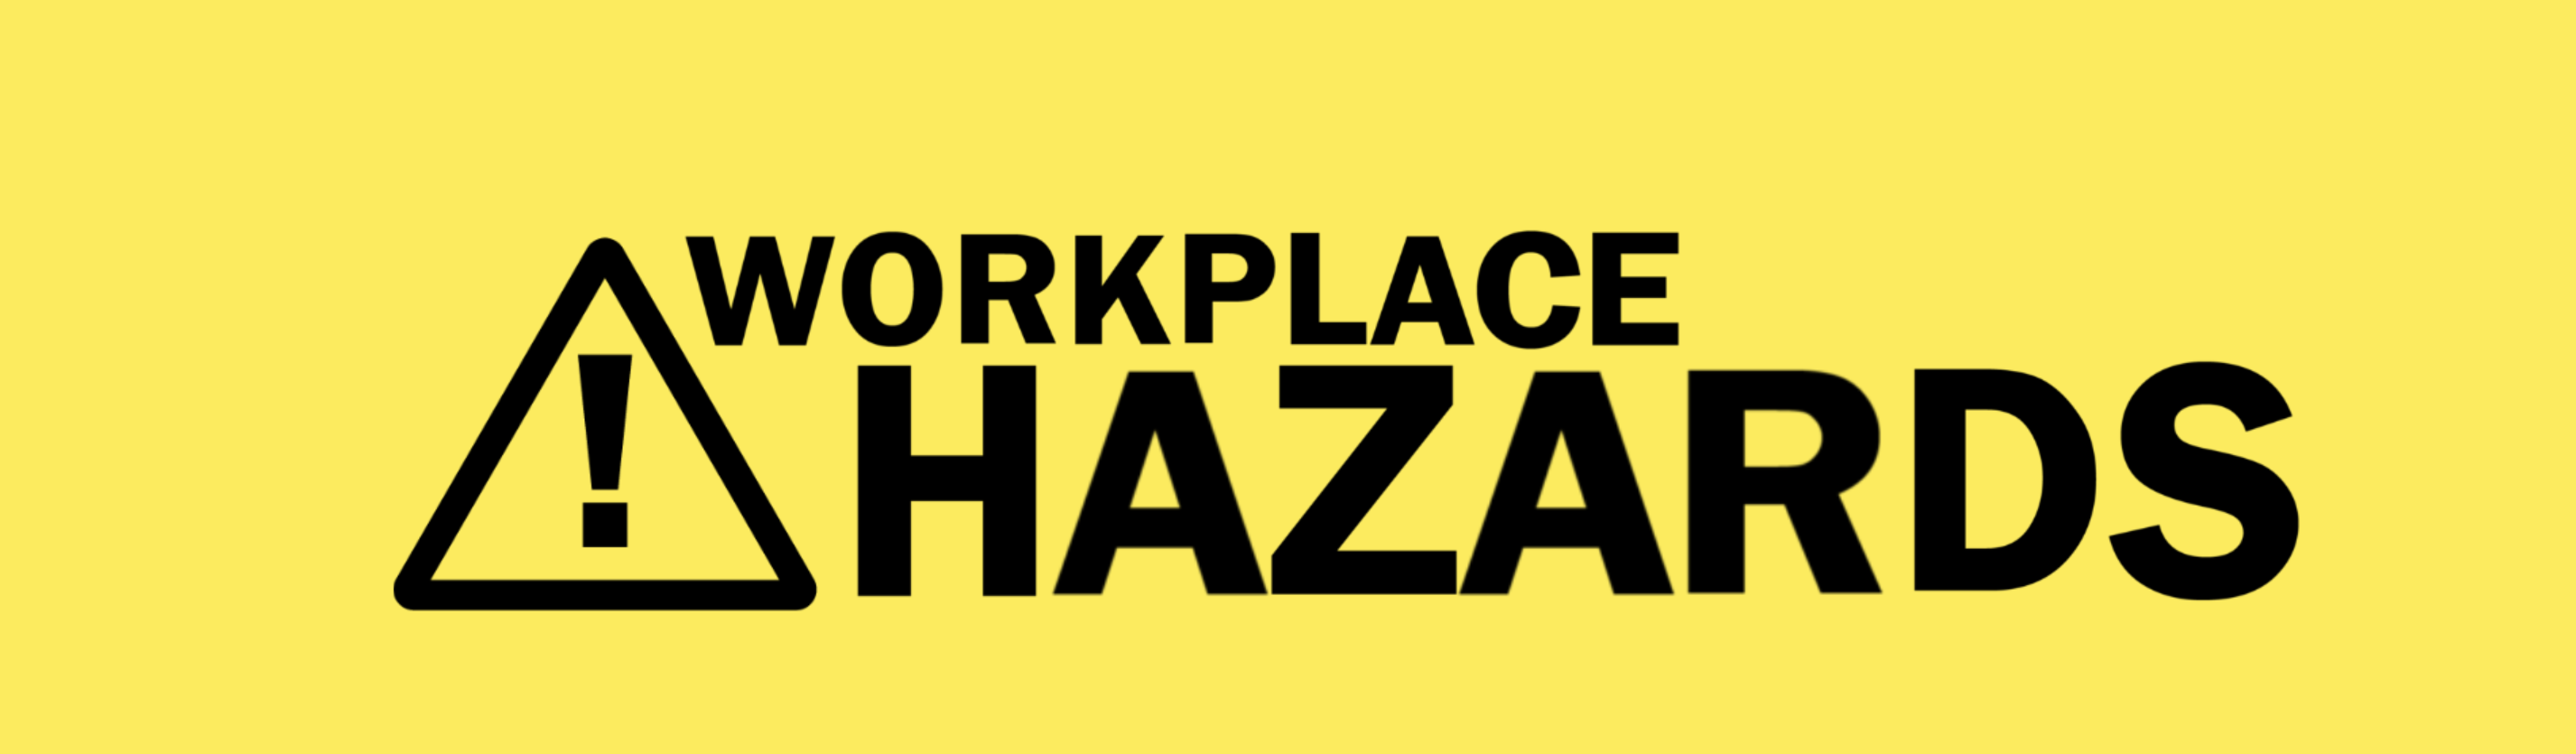 Workplace Hazards